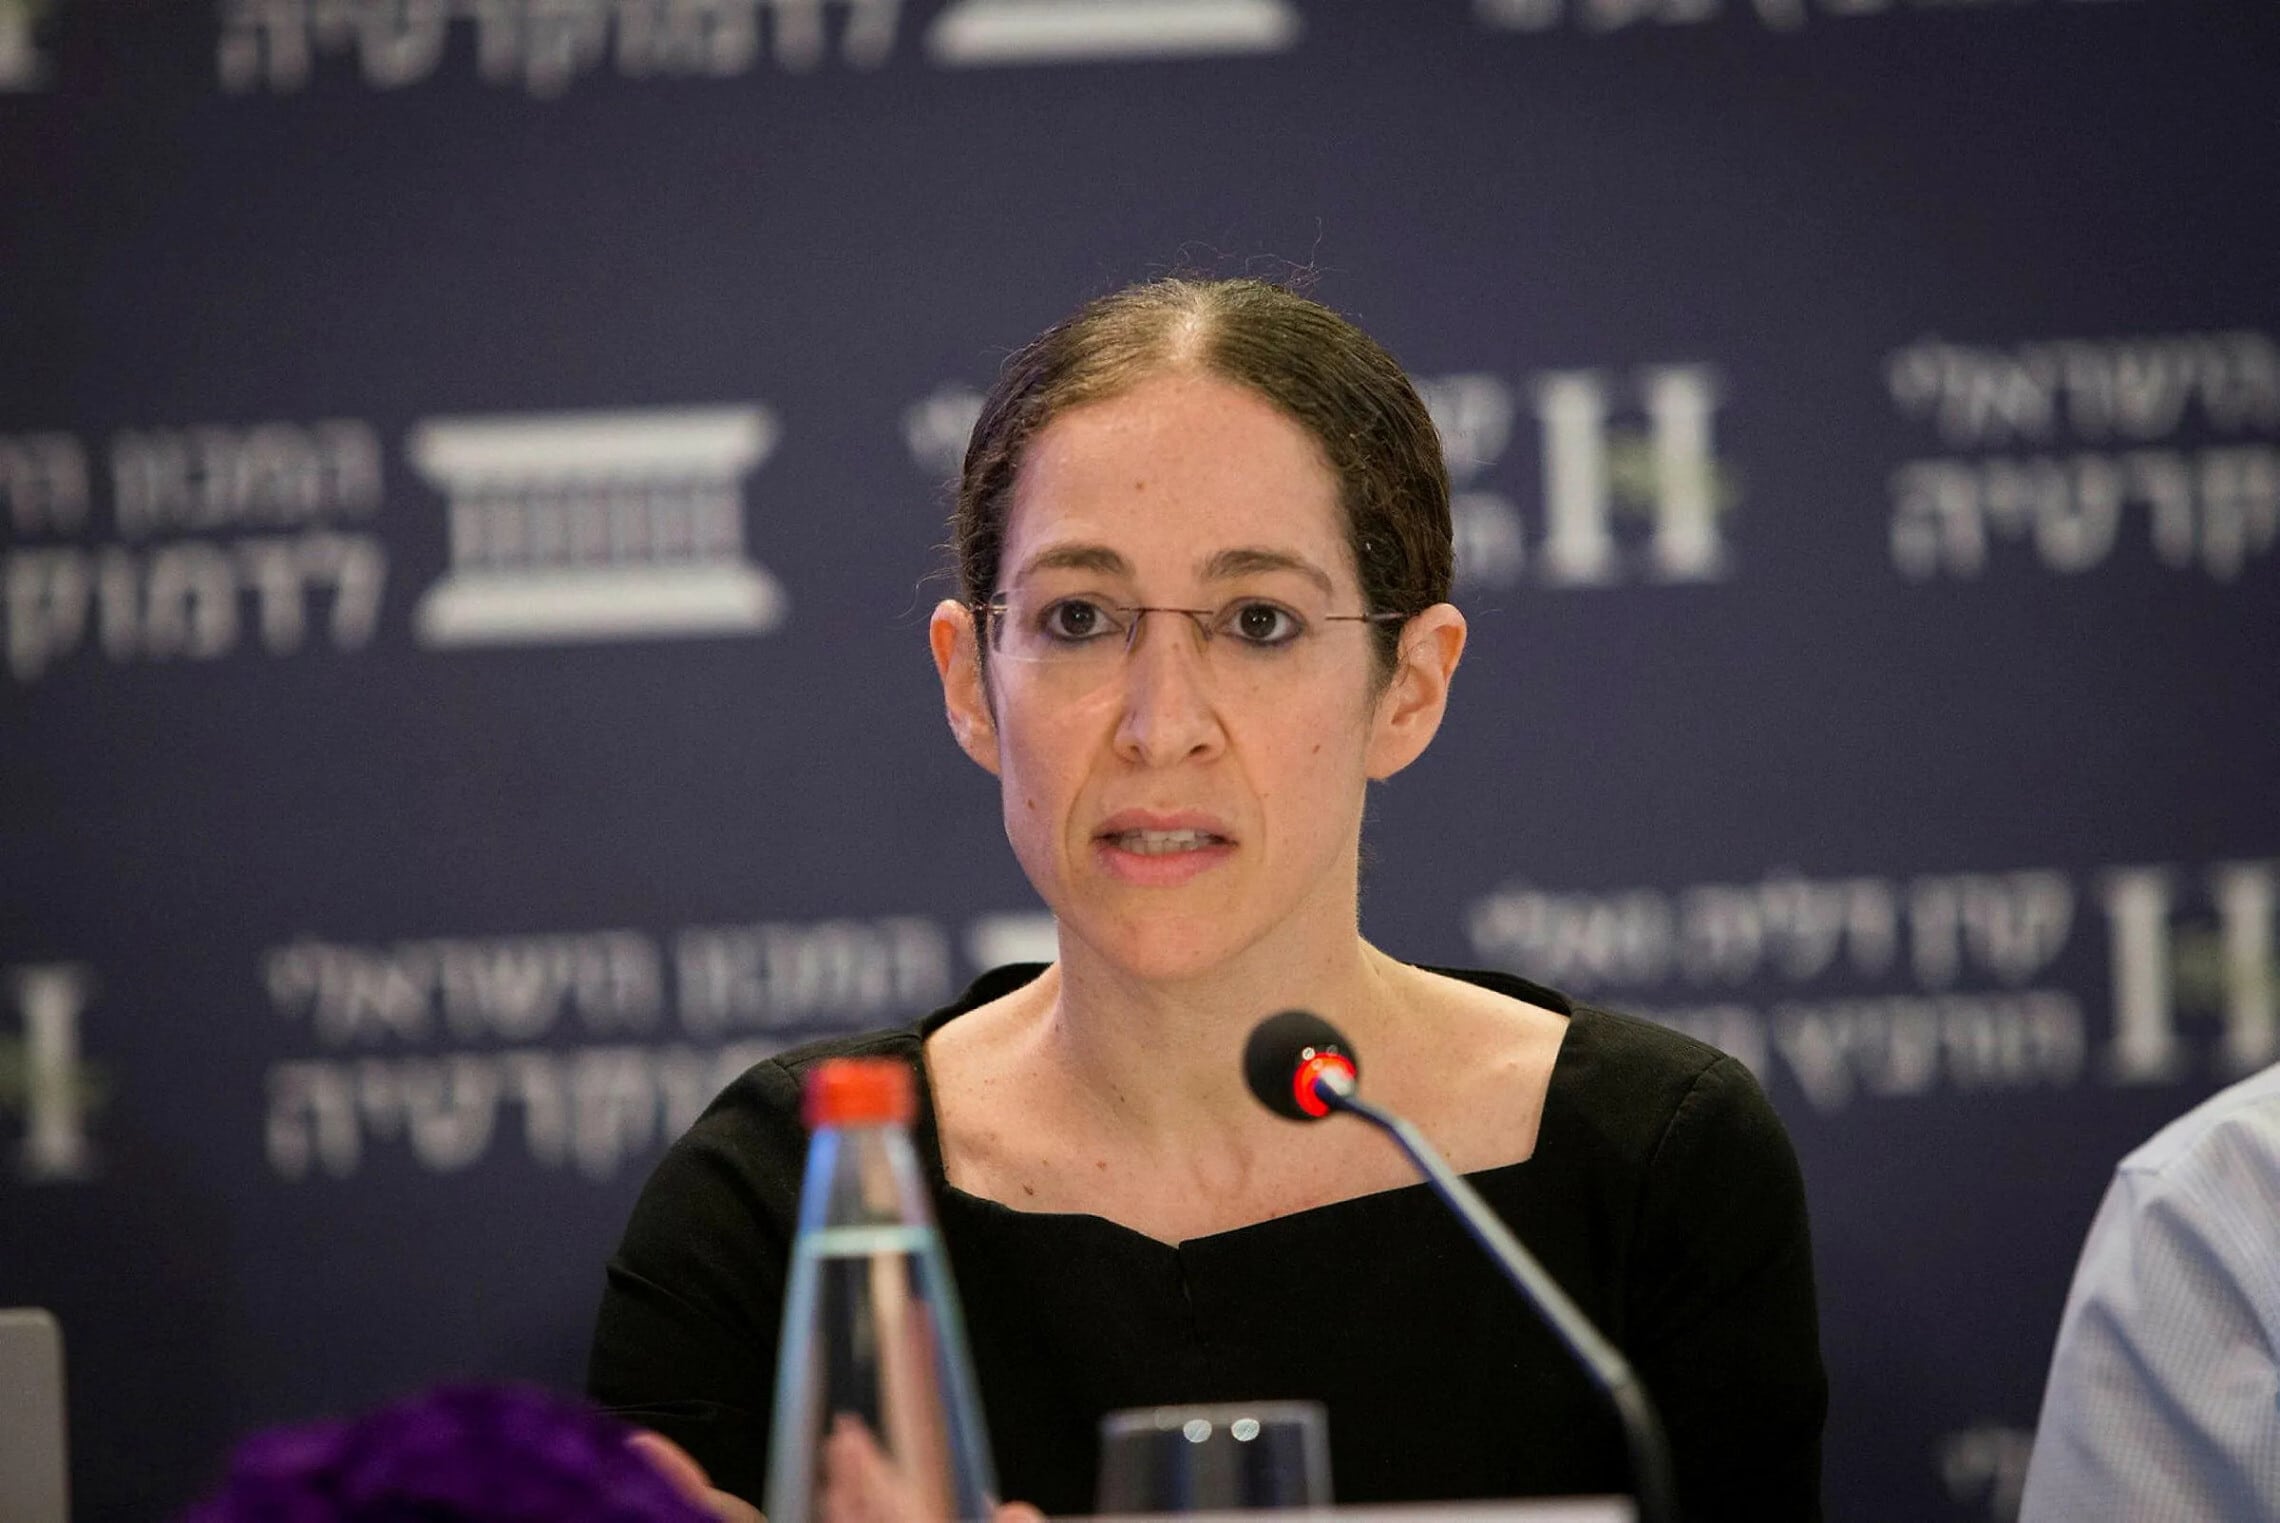 שירה גרינברג, הכלכלנית הראשית במשרד האוצר (צילום: המכון הישראלי לדמוקרטיה)